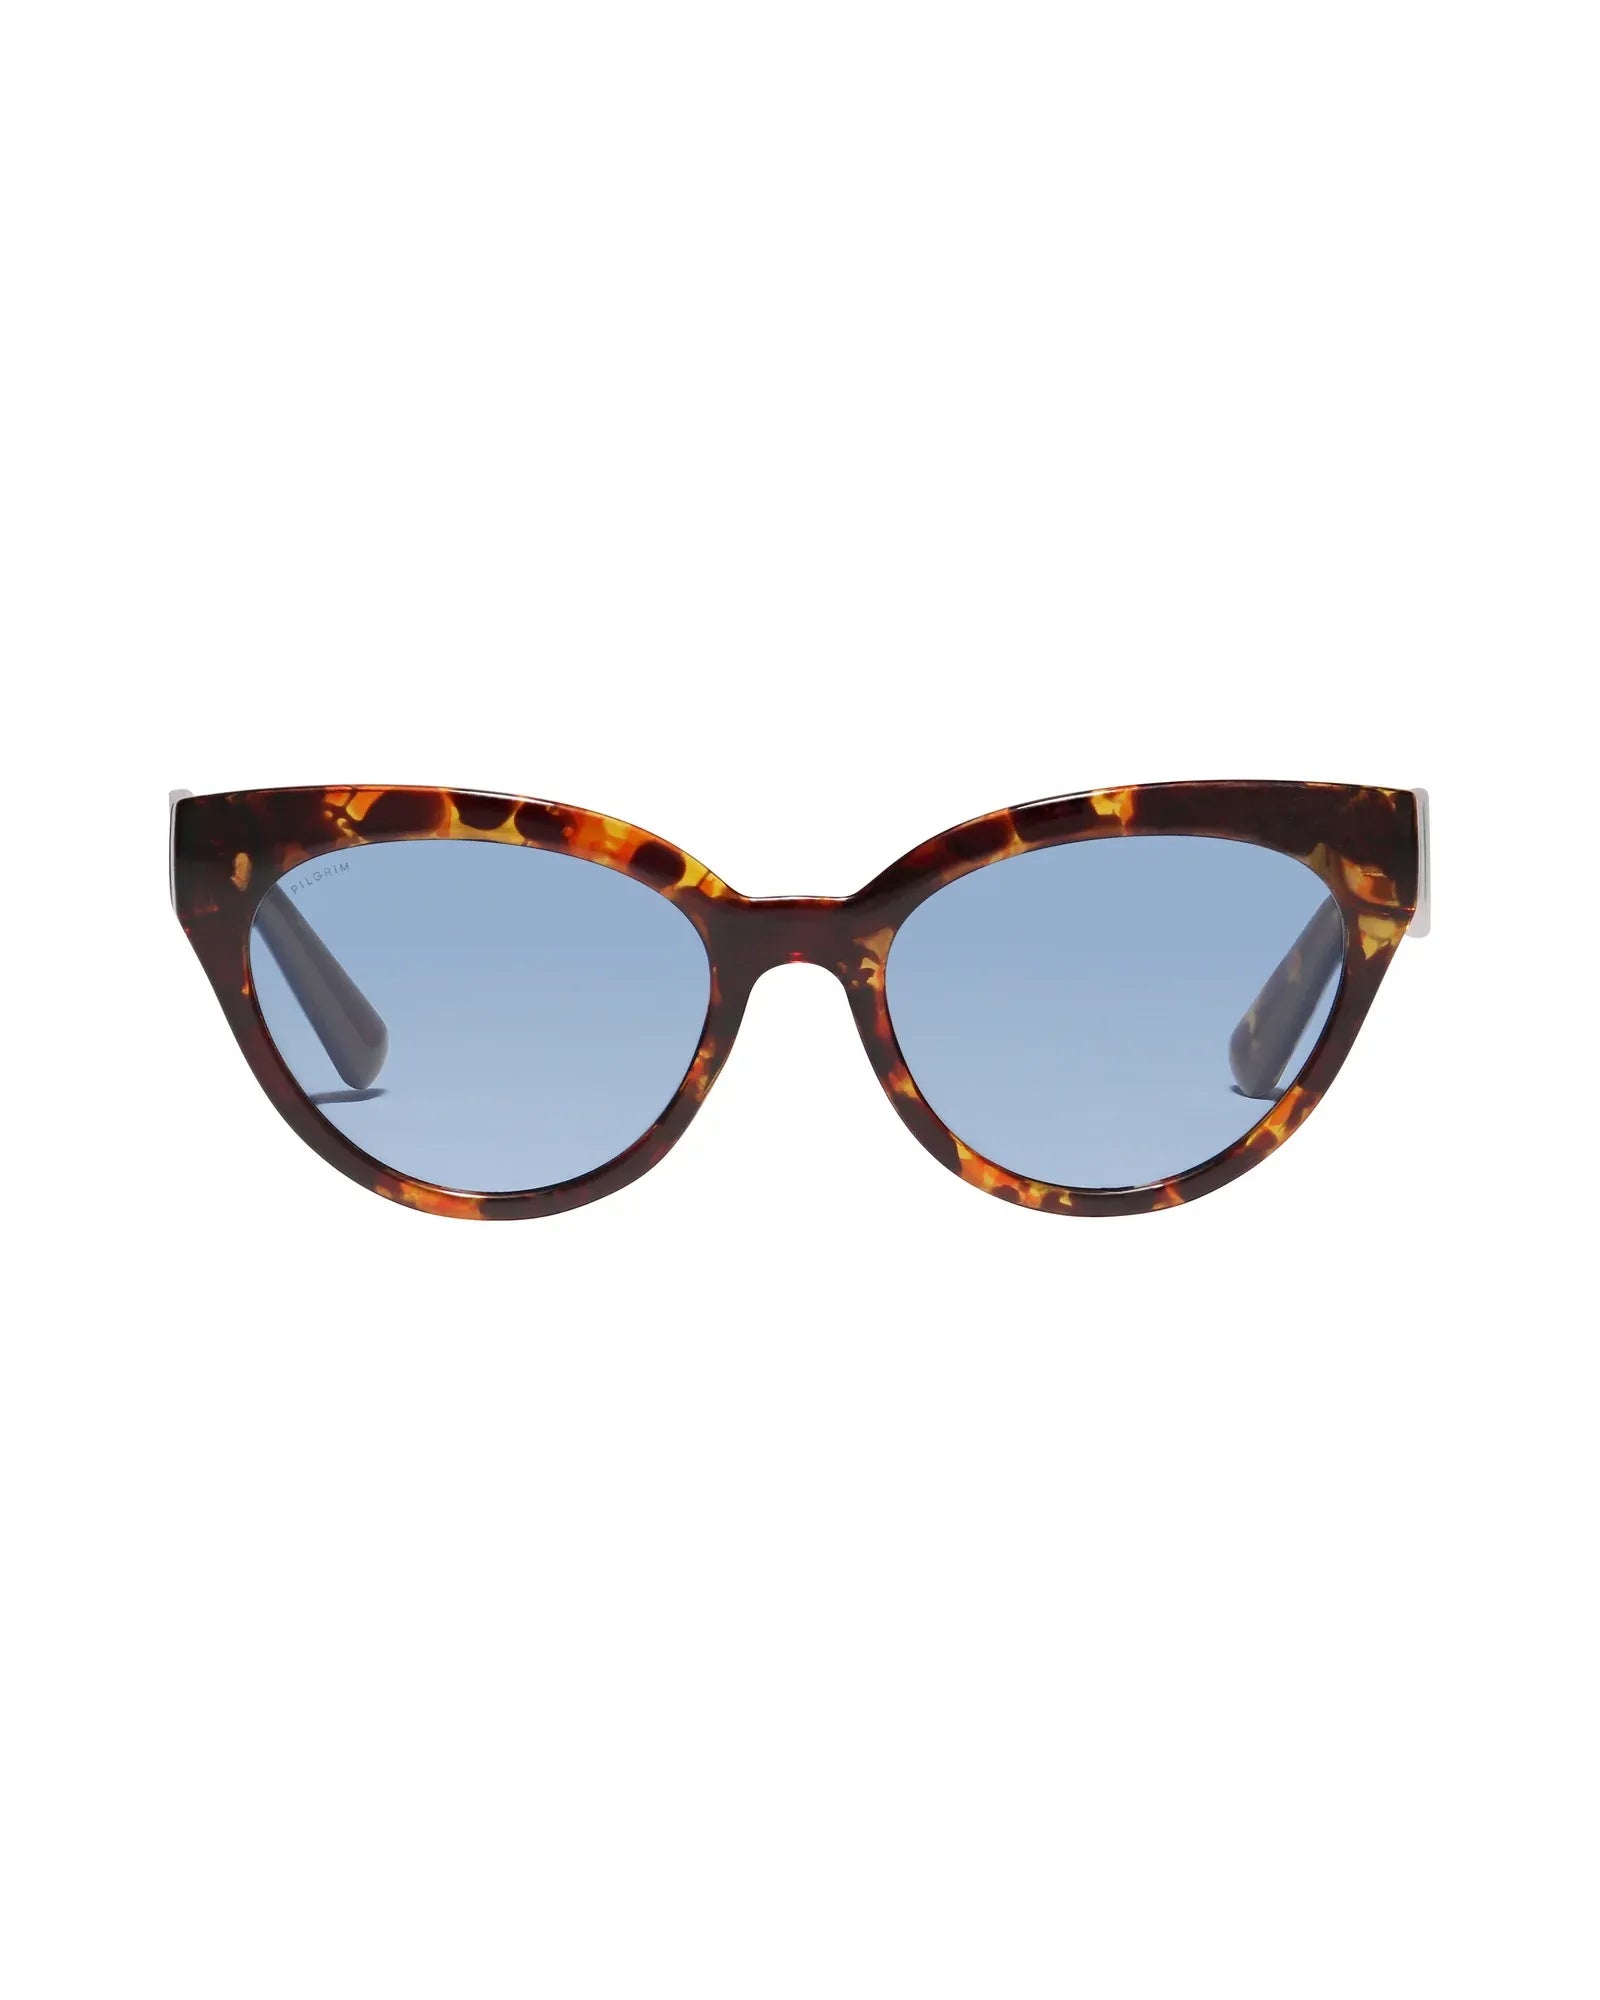 RAISA Recycled Sunglasses - Tortoise Brown